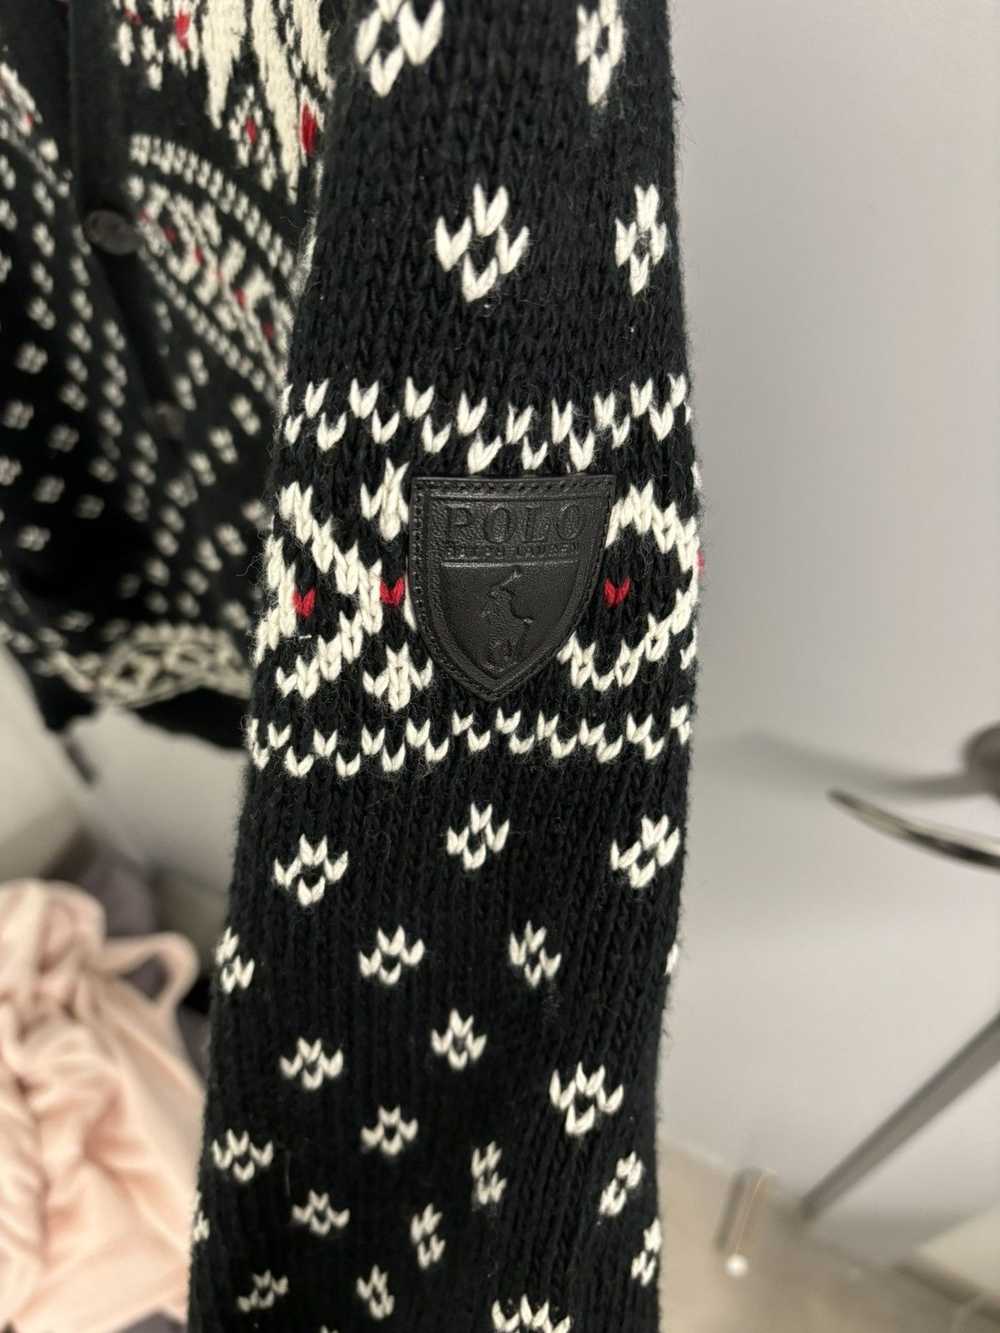 Polo Ralph Lauren Polo Ugly Christmas Sweater - image 5